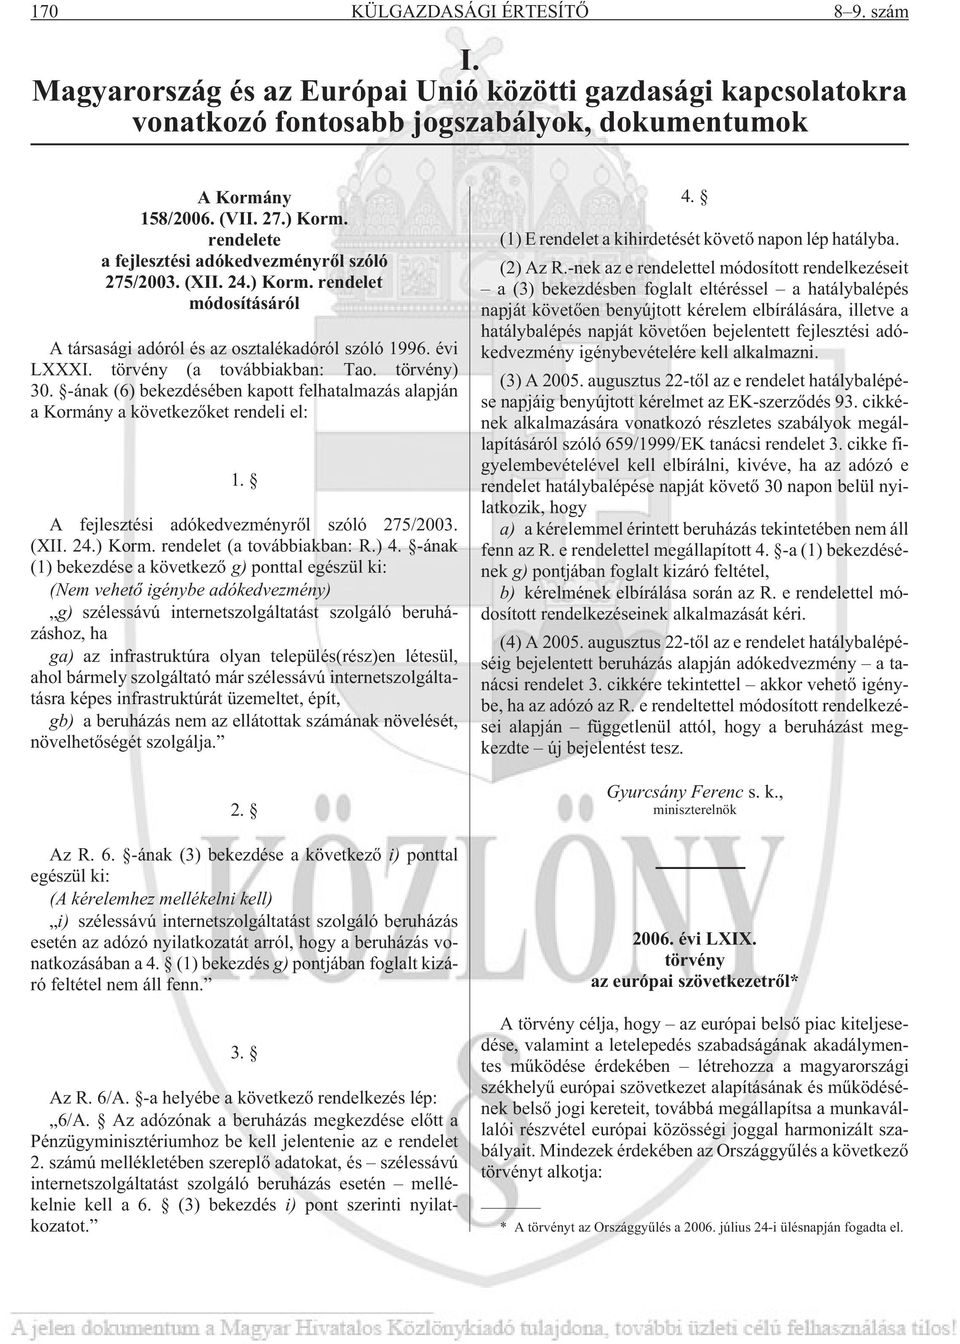 törvény) 30. -ának (6) bekezdésében kapott felhatalmazás alapján a Kormány a következõket rendeli el: 1. A fejlesztési adókedvezményrõl szóló 275/2003. (XII. 24.) Korm. rendelet (a továbbiakban: R.